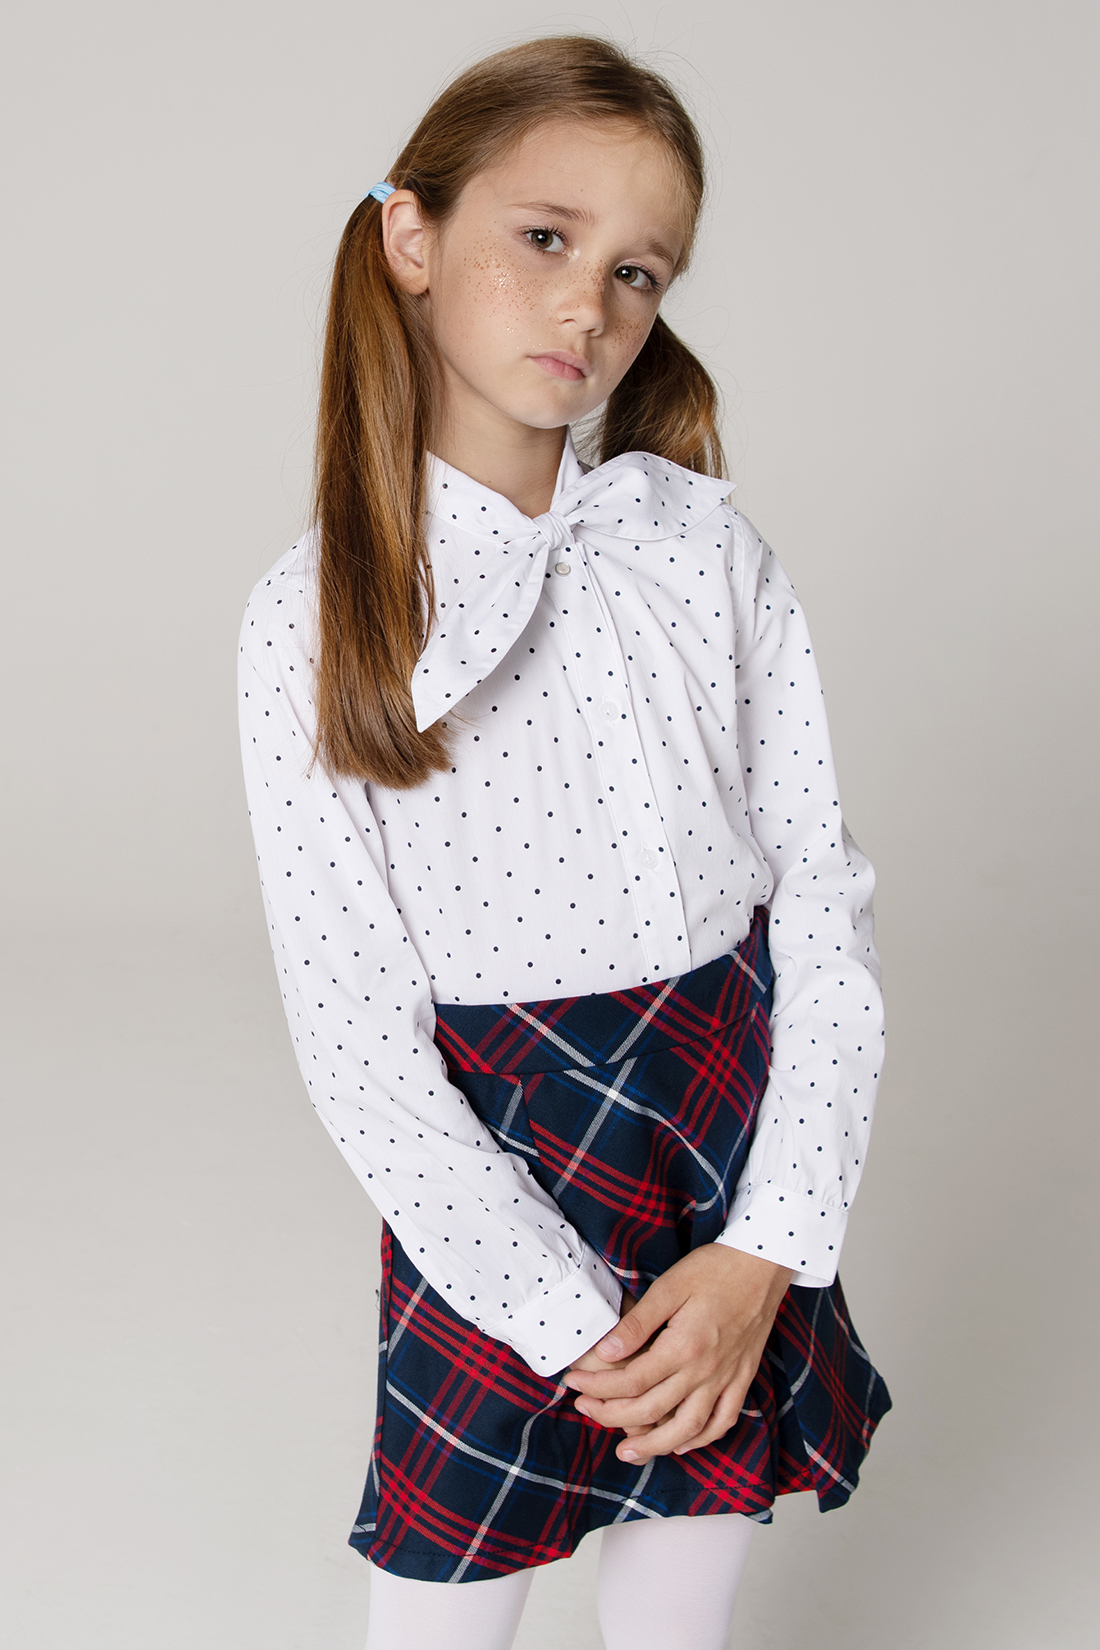 Блузка для девочки (арт. baon BK179505), размер 152-158, цвет white printed#белый